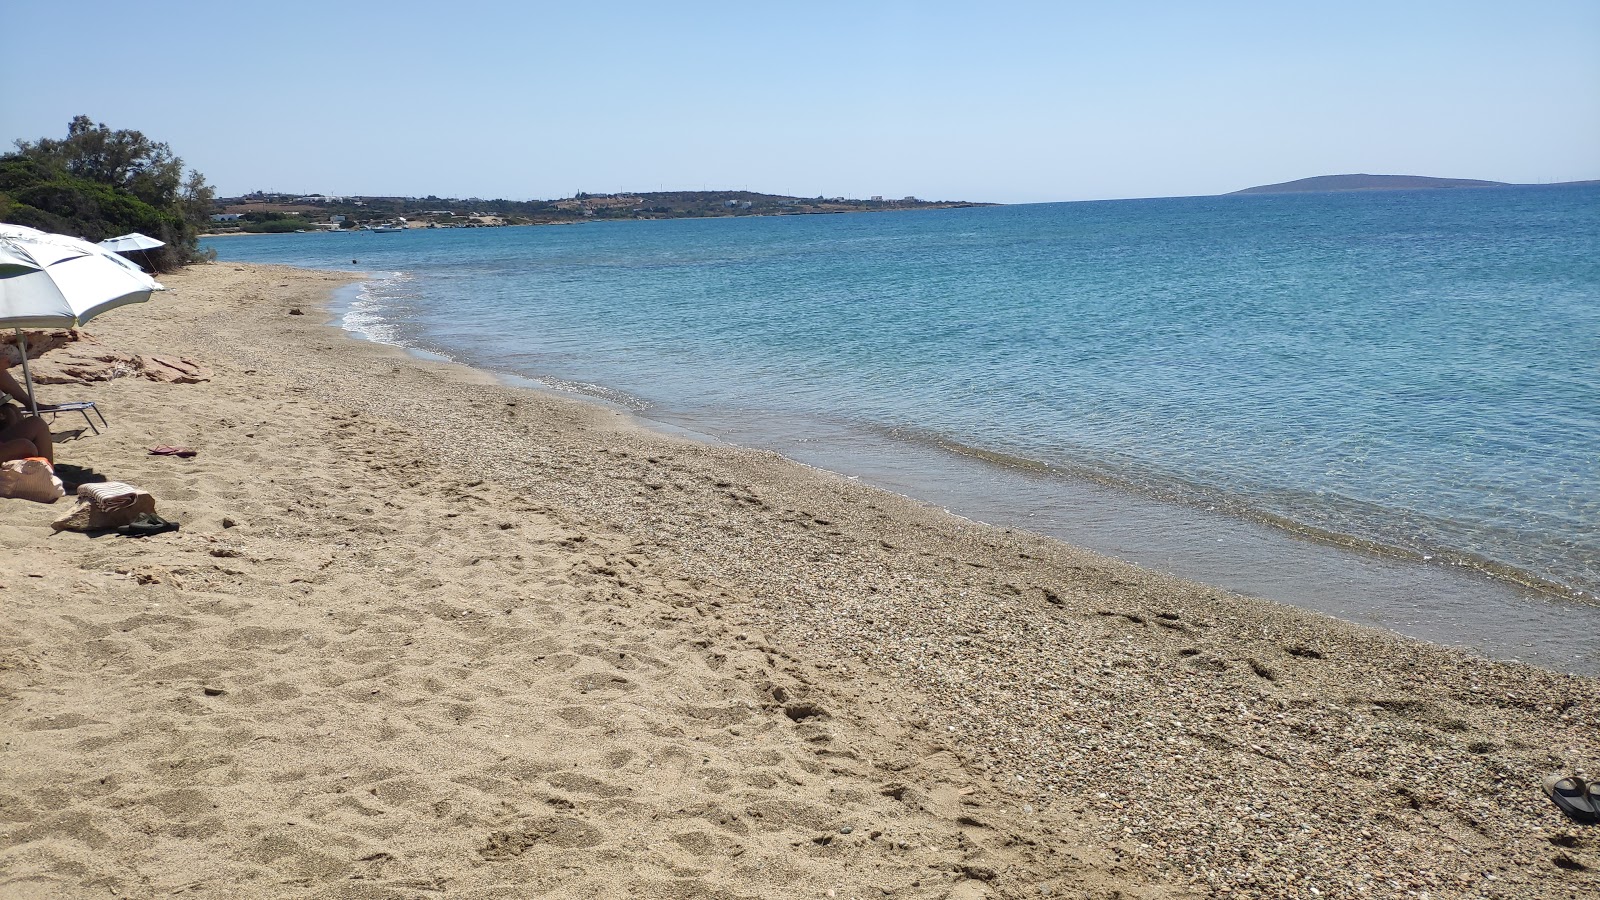 Fotografie cu Voutakos beach cu plajă spațioasă